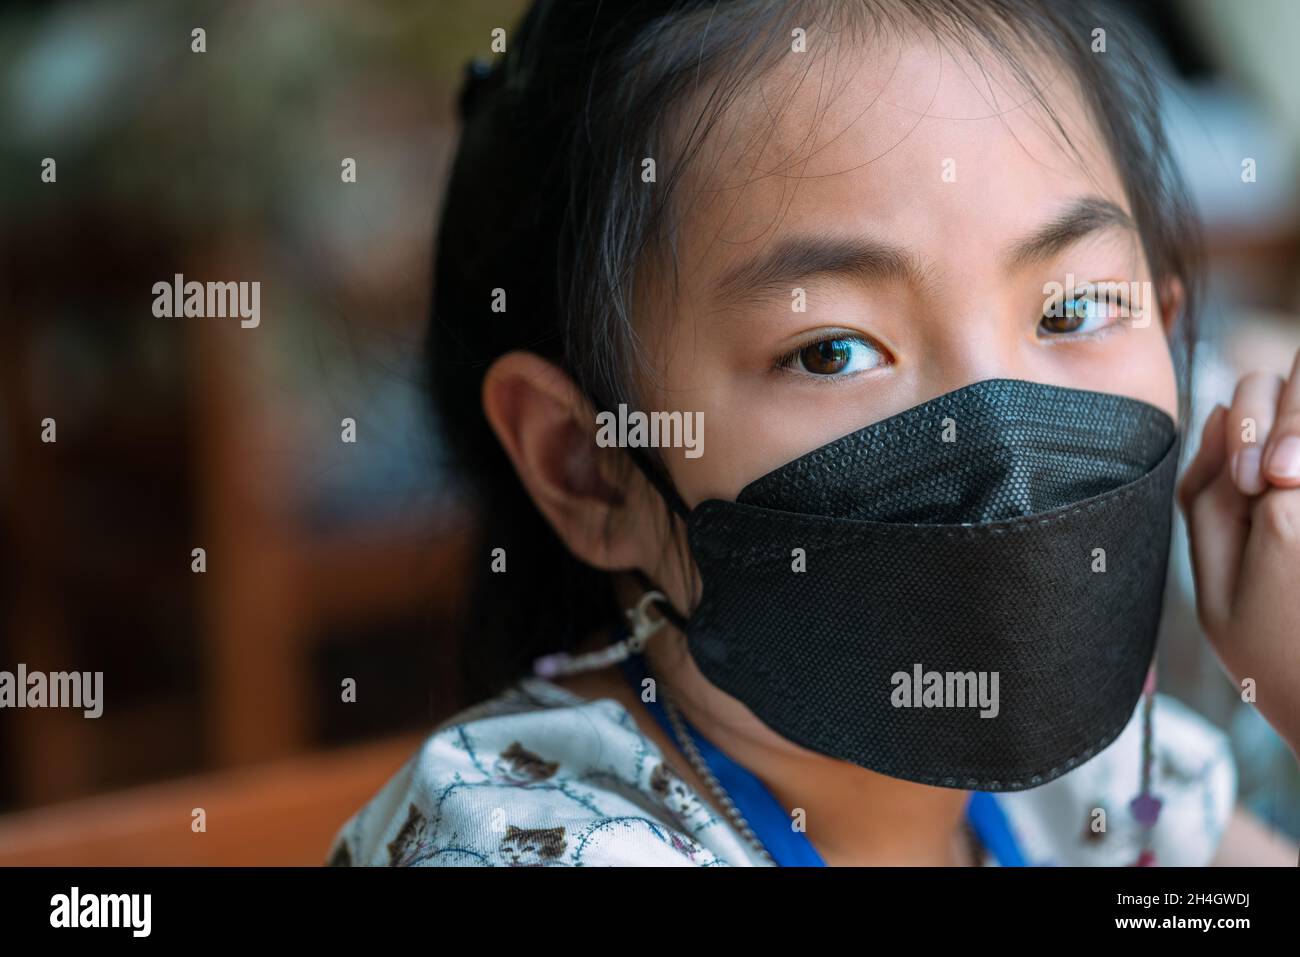 Nahaufnahme Gesicht der asiatischen Kind Mädchen trägt medizinische schwarze Farbmarke, emotionale Augen Blick auf die Kamera, verschwommene Hintergrund Menschen im Restaurant. Stockfoto